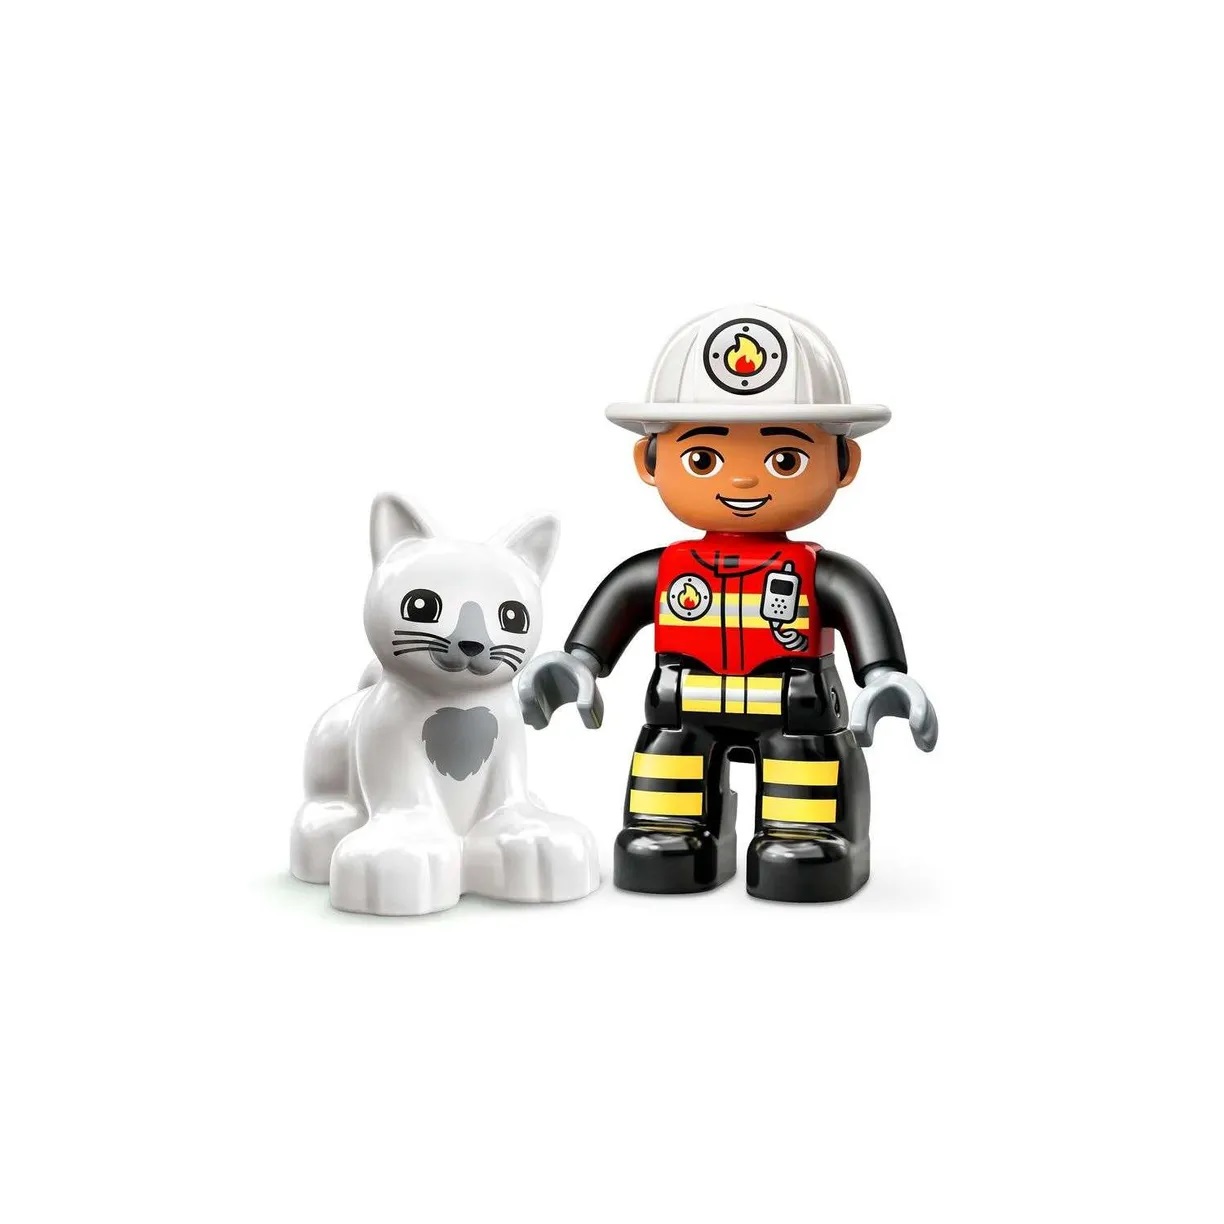 Lego Duplo 10969 Пожарная машина с мигалкой